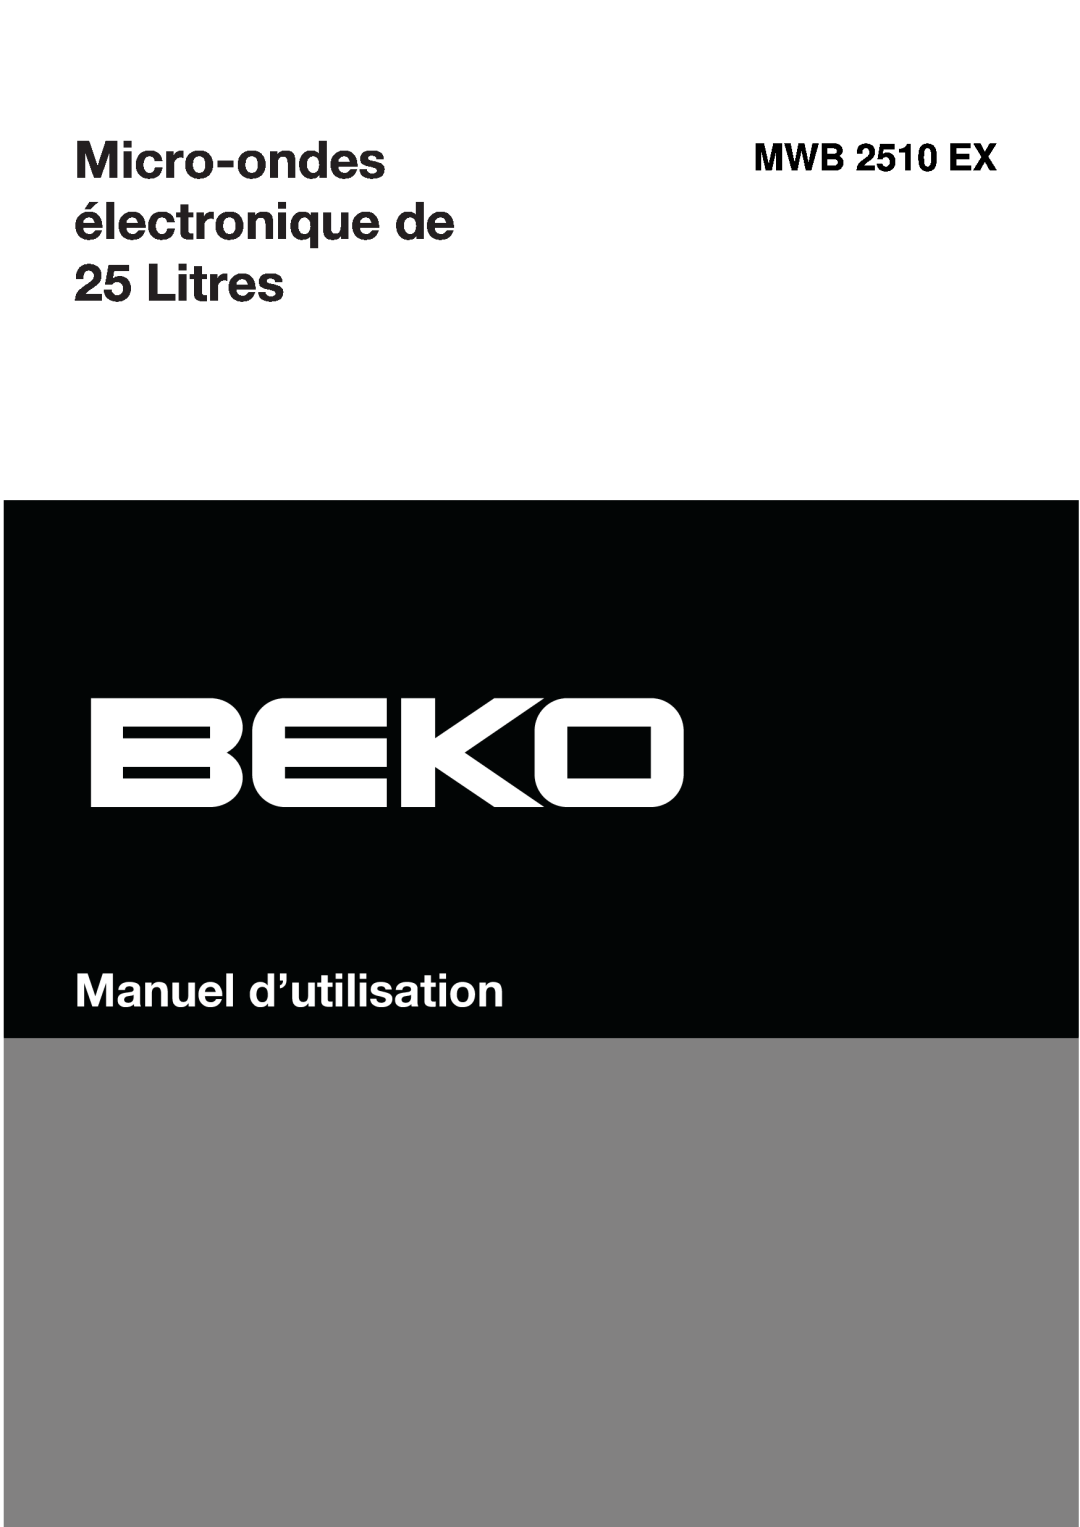 Beko MWB 2510 EX instruction manual Micro-ondesélectronique de 25 Litres, Manuel d’utilisation 